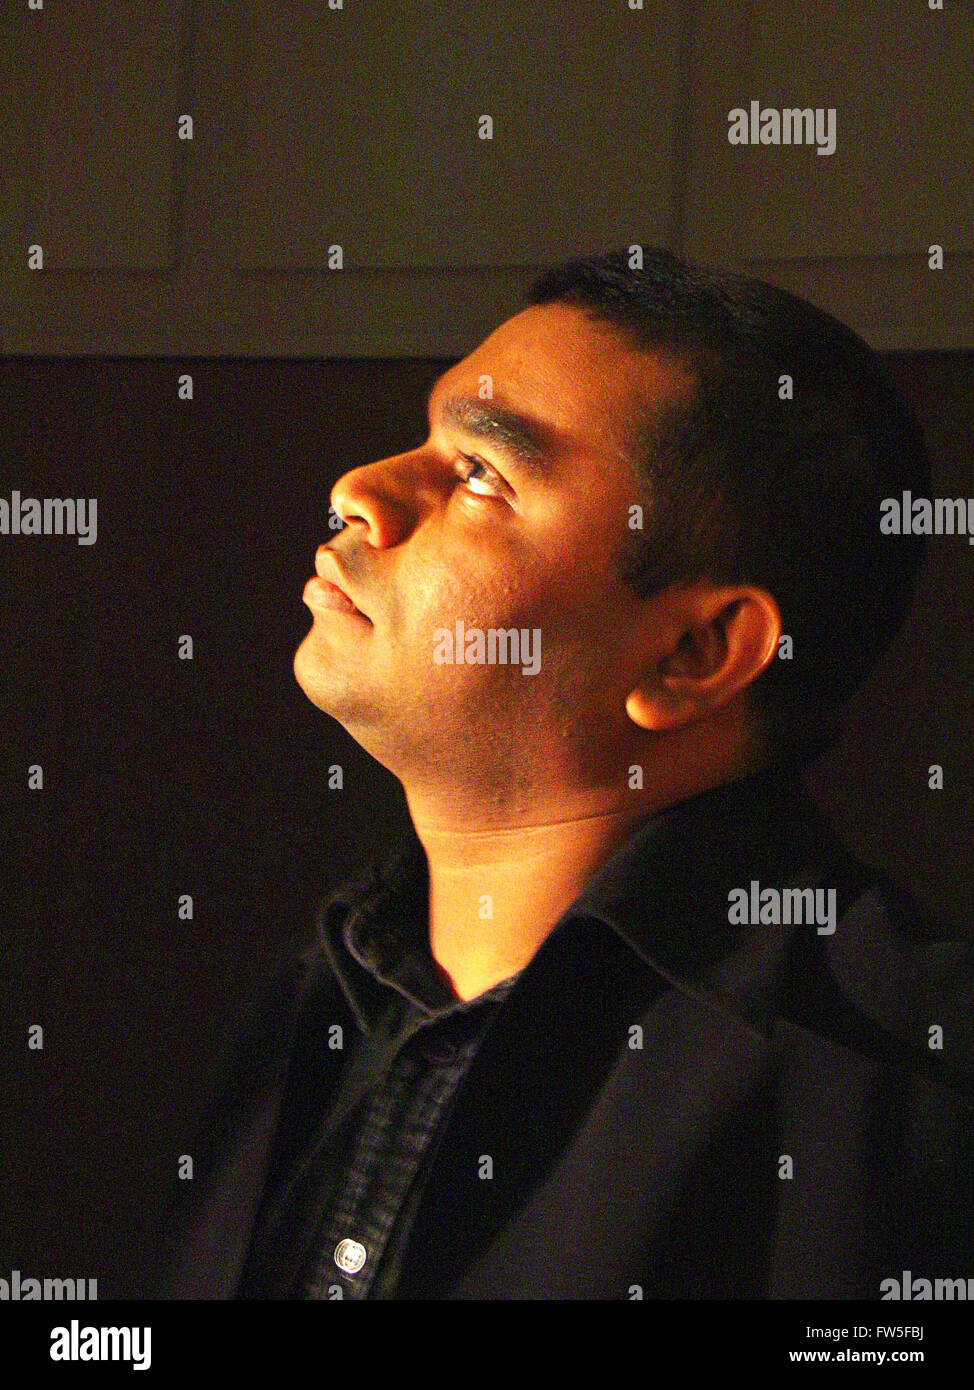 Allah Rakha Rahman nel 2004. Indian film compositore musicale, nato il 6 gennaio 1966. Compositore di musical della fase Bombay Dreams. Foto Stock